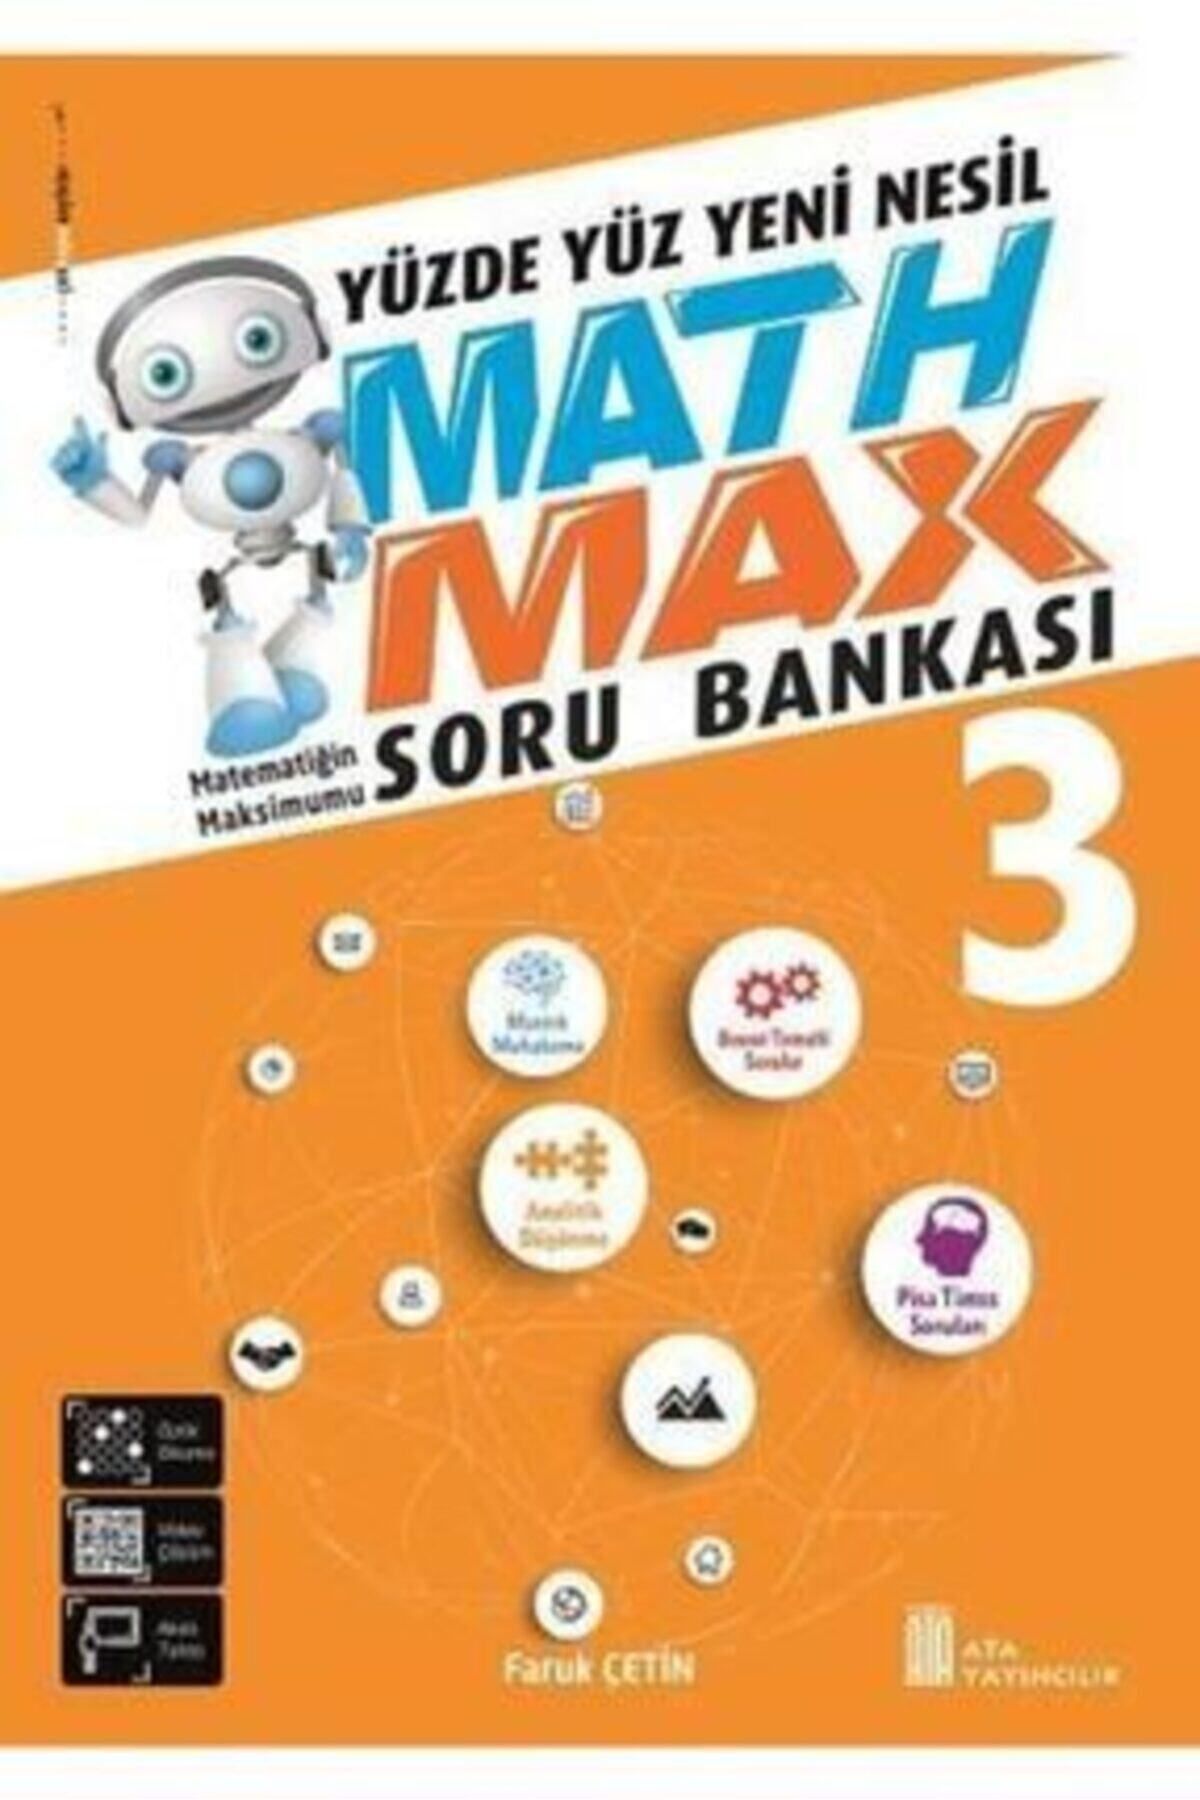 Ata Yayıncılık 3. Sınıf Math Max Soru Bankası